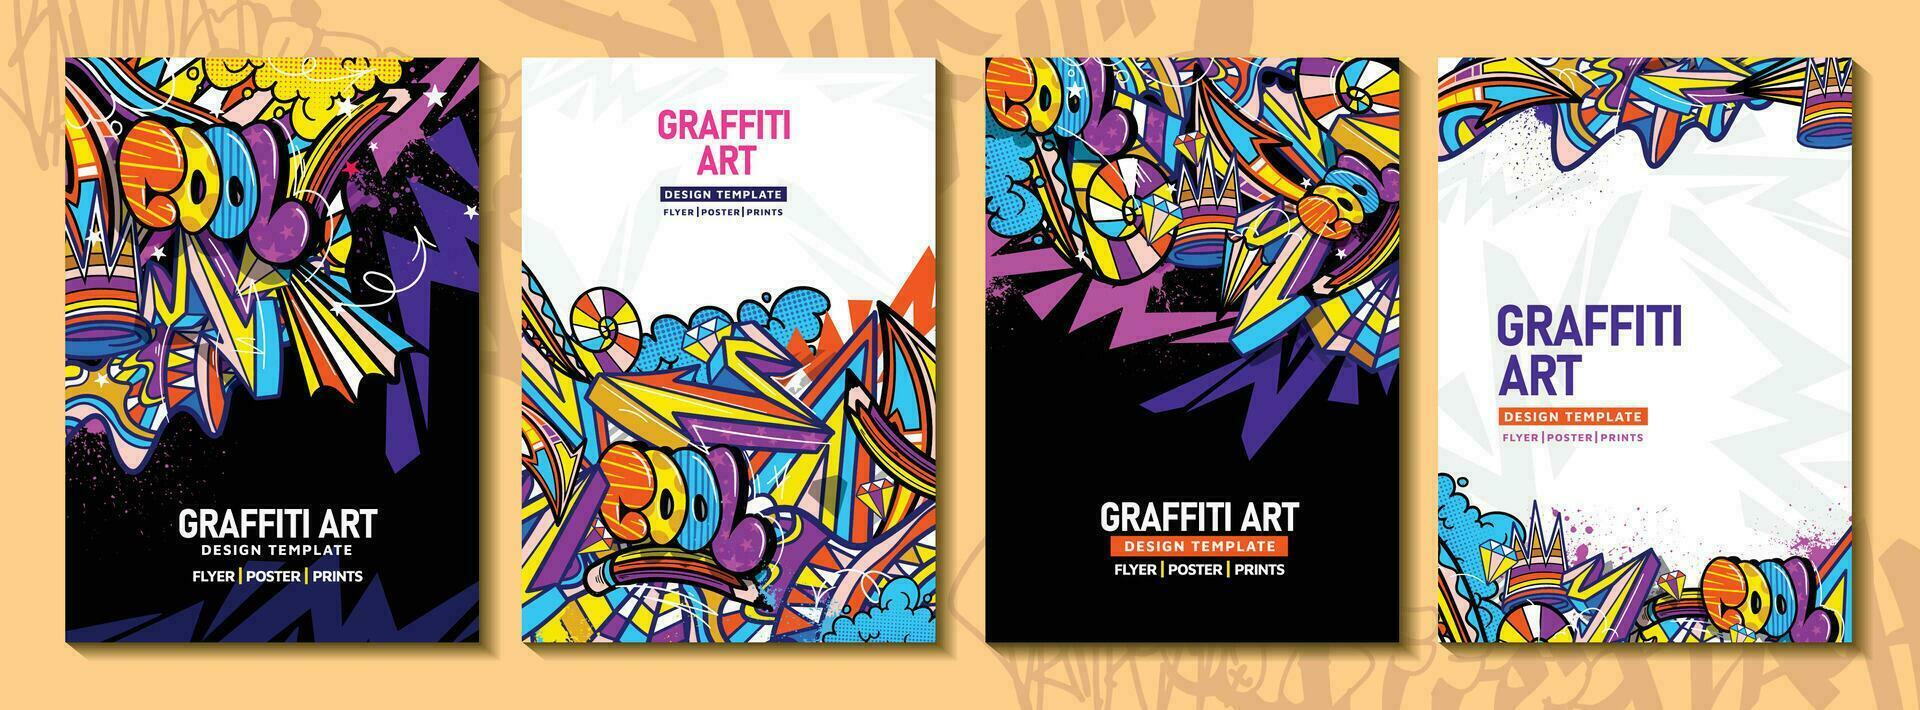 moderne griffonnage graffiti art affiche ou prospectus modèle avec coloré conception. dessiné à la main abstrait graffiti illustration vecteur dans rue art thème